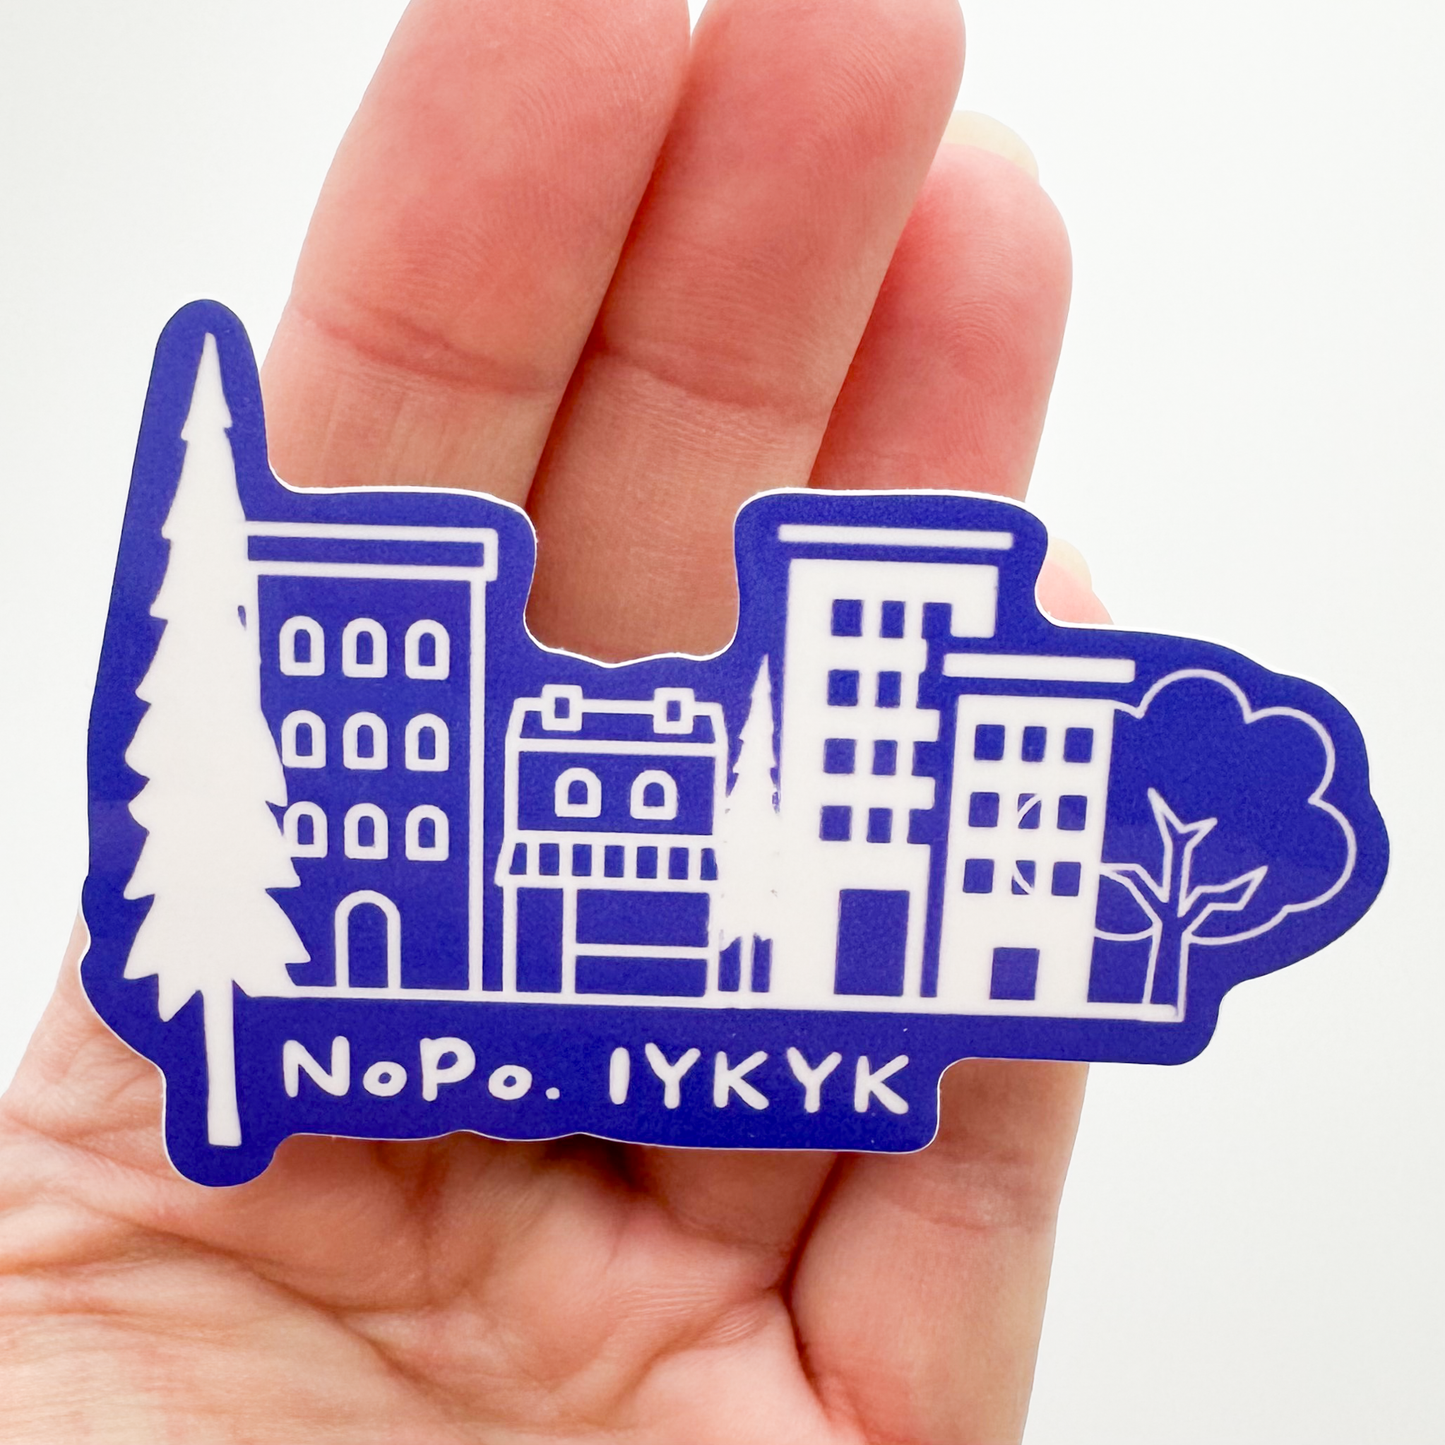 NoPo IYKYK North Portland Sticker